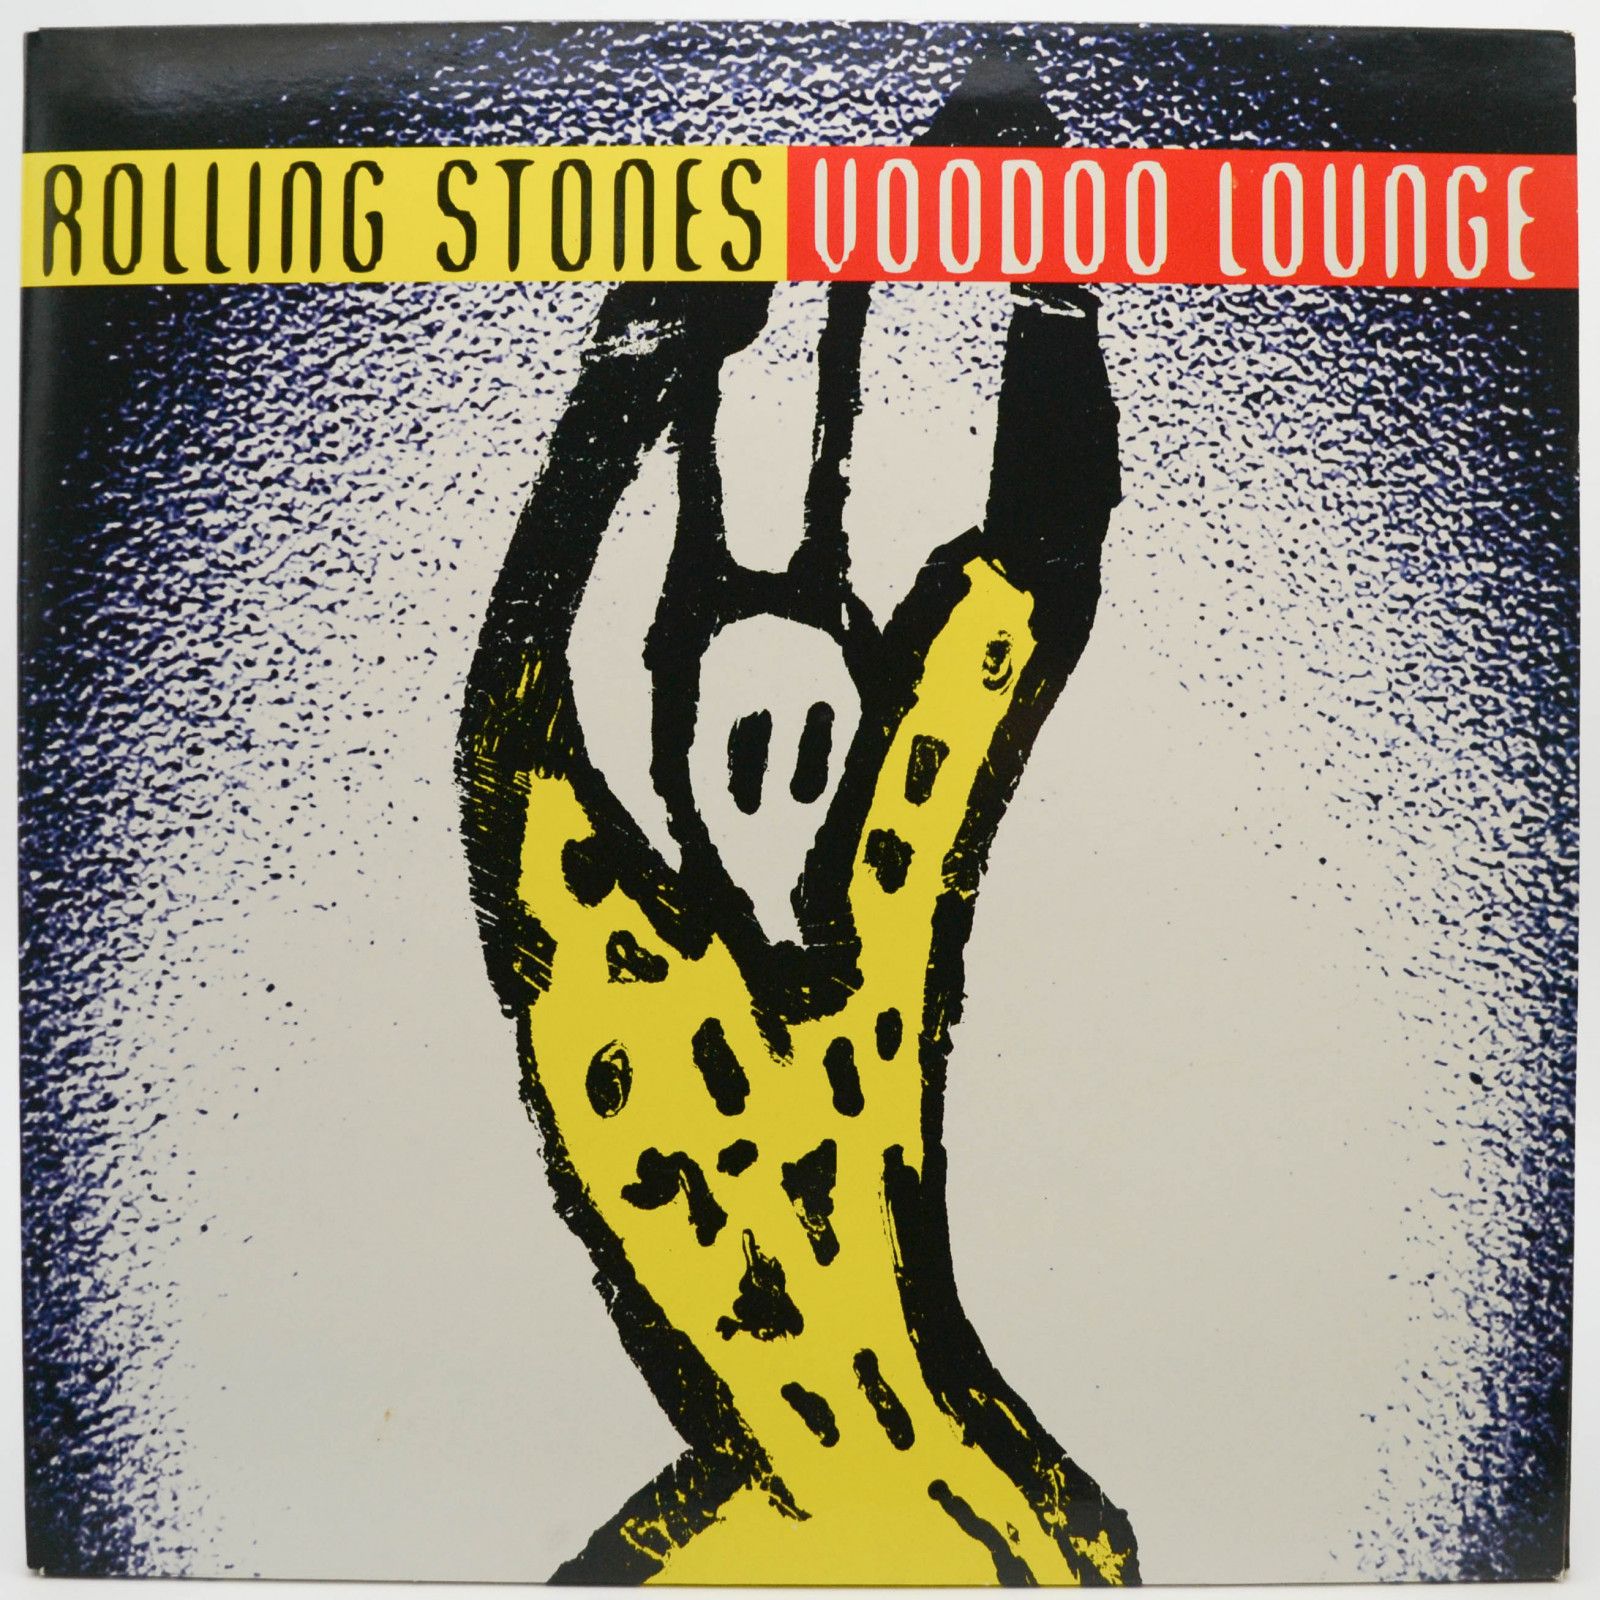 Rolling Stones — Voodoo Lounge (2LP), 1994